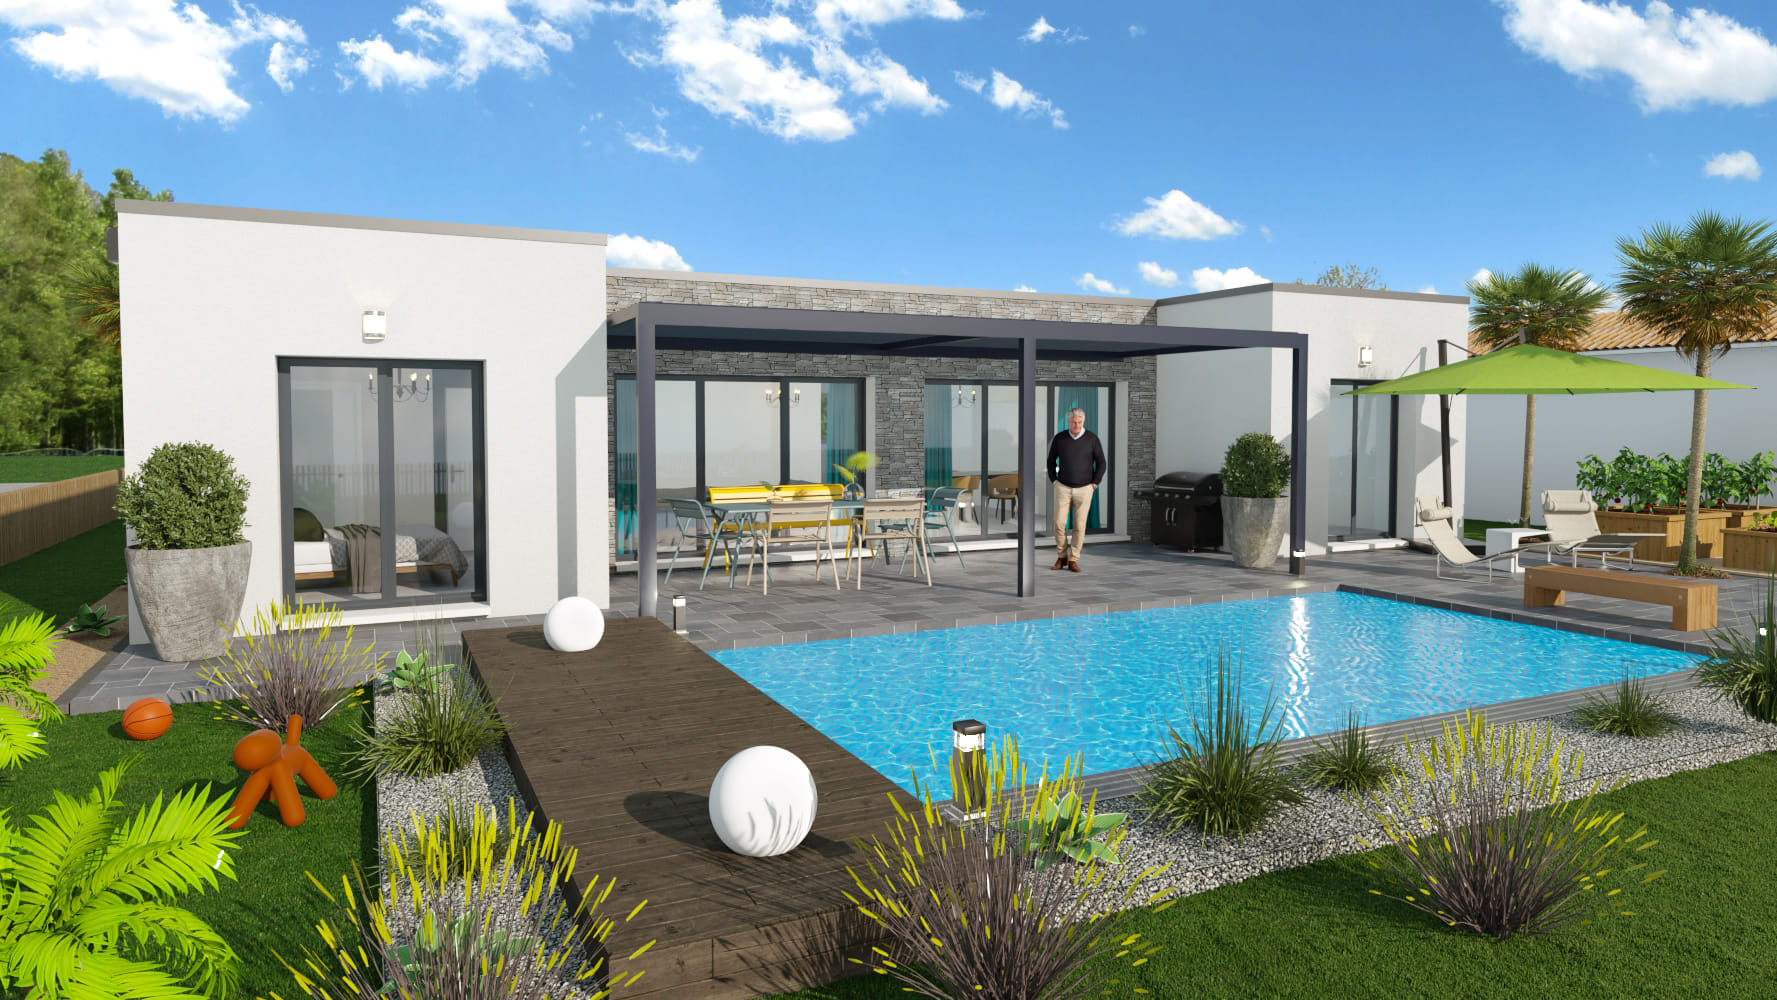 Maison moderne avec grandes baies vitrées, piscine et terrasse design